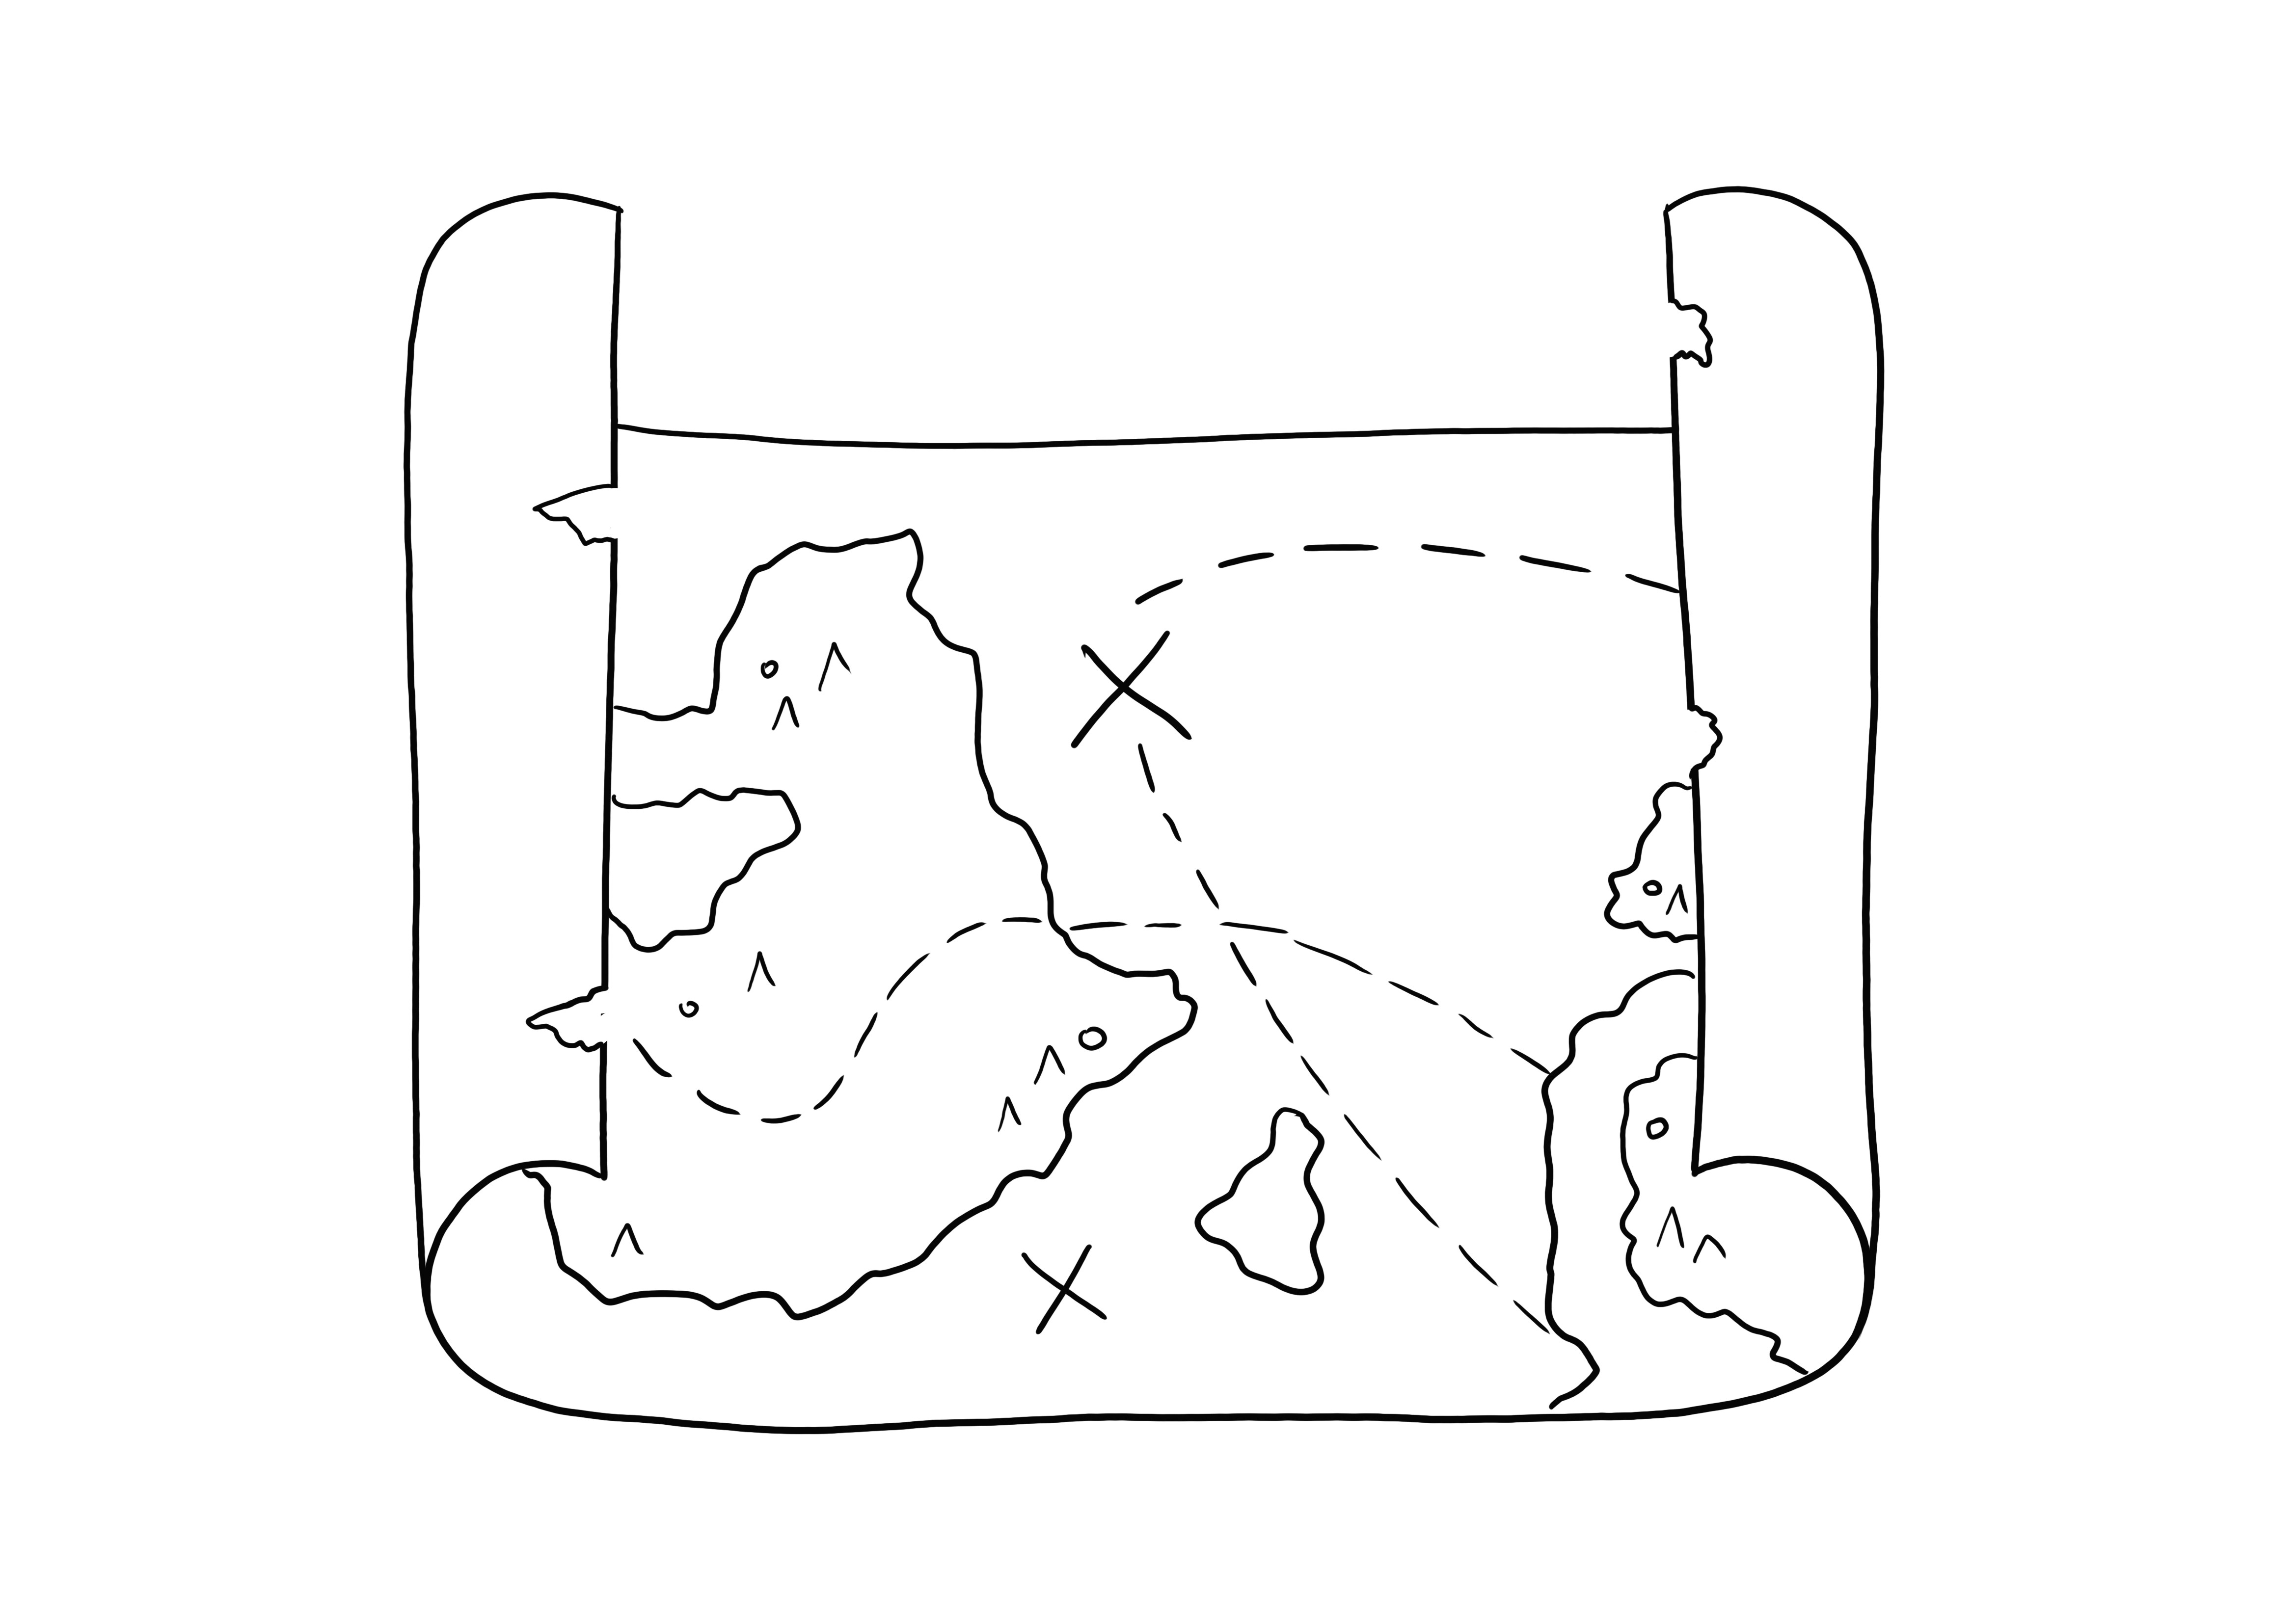 Dibujo para colorear Mapa del tesoro fácil y gratis para niños imprimible gratis